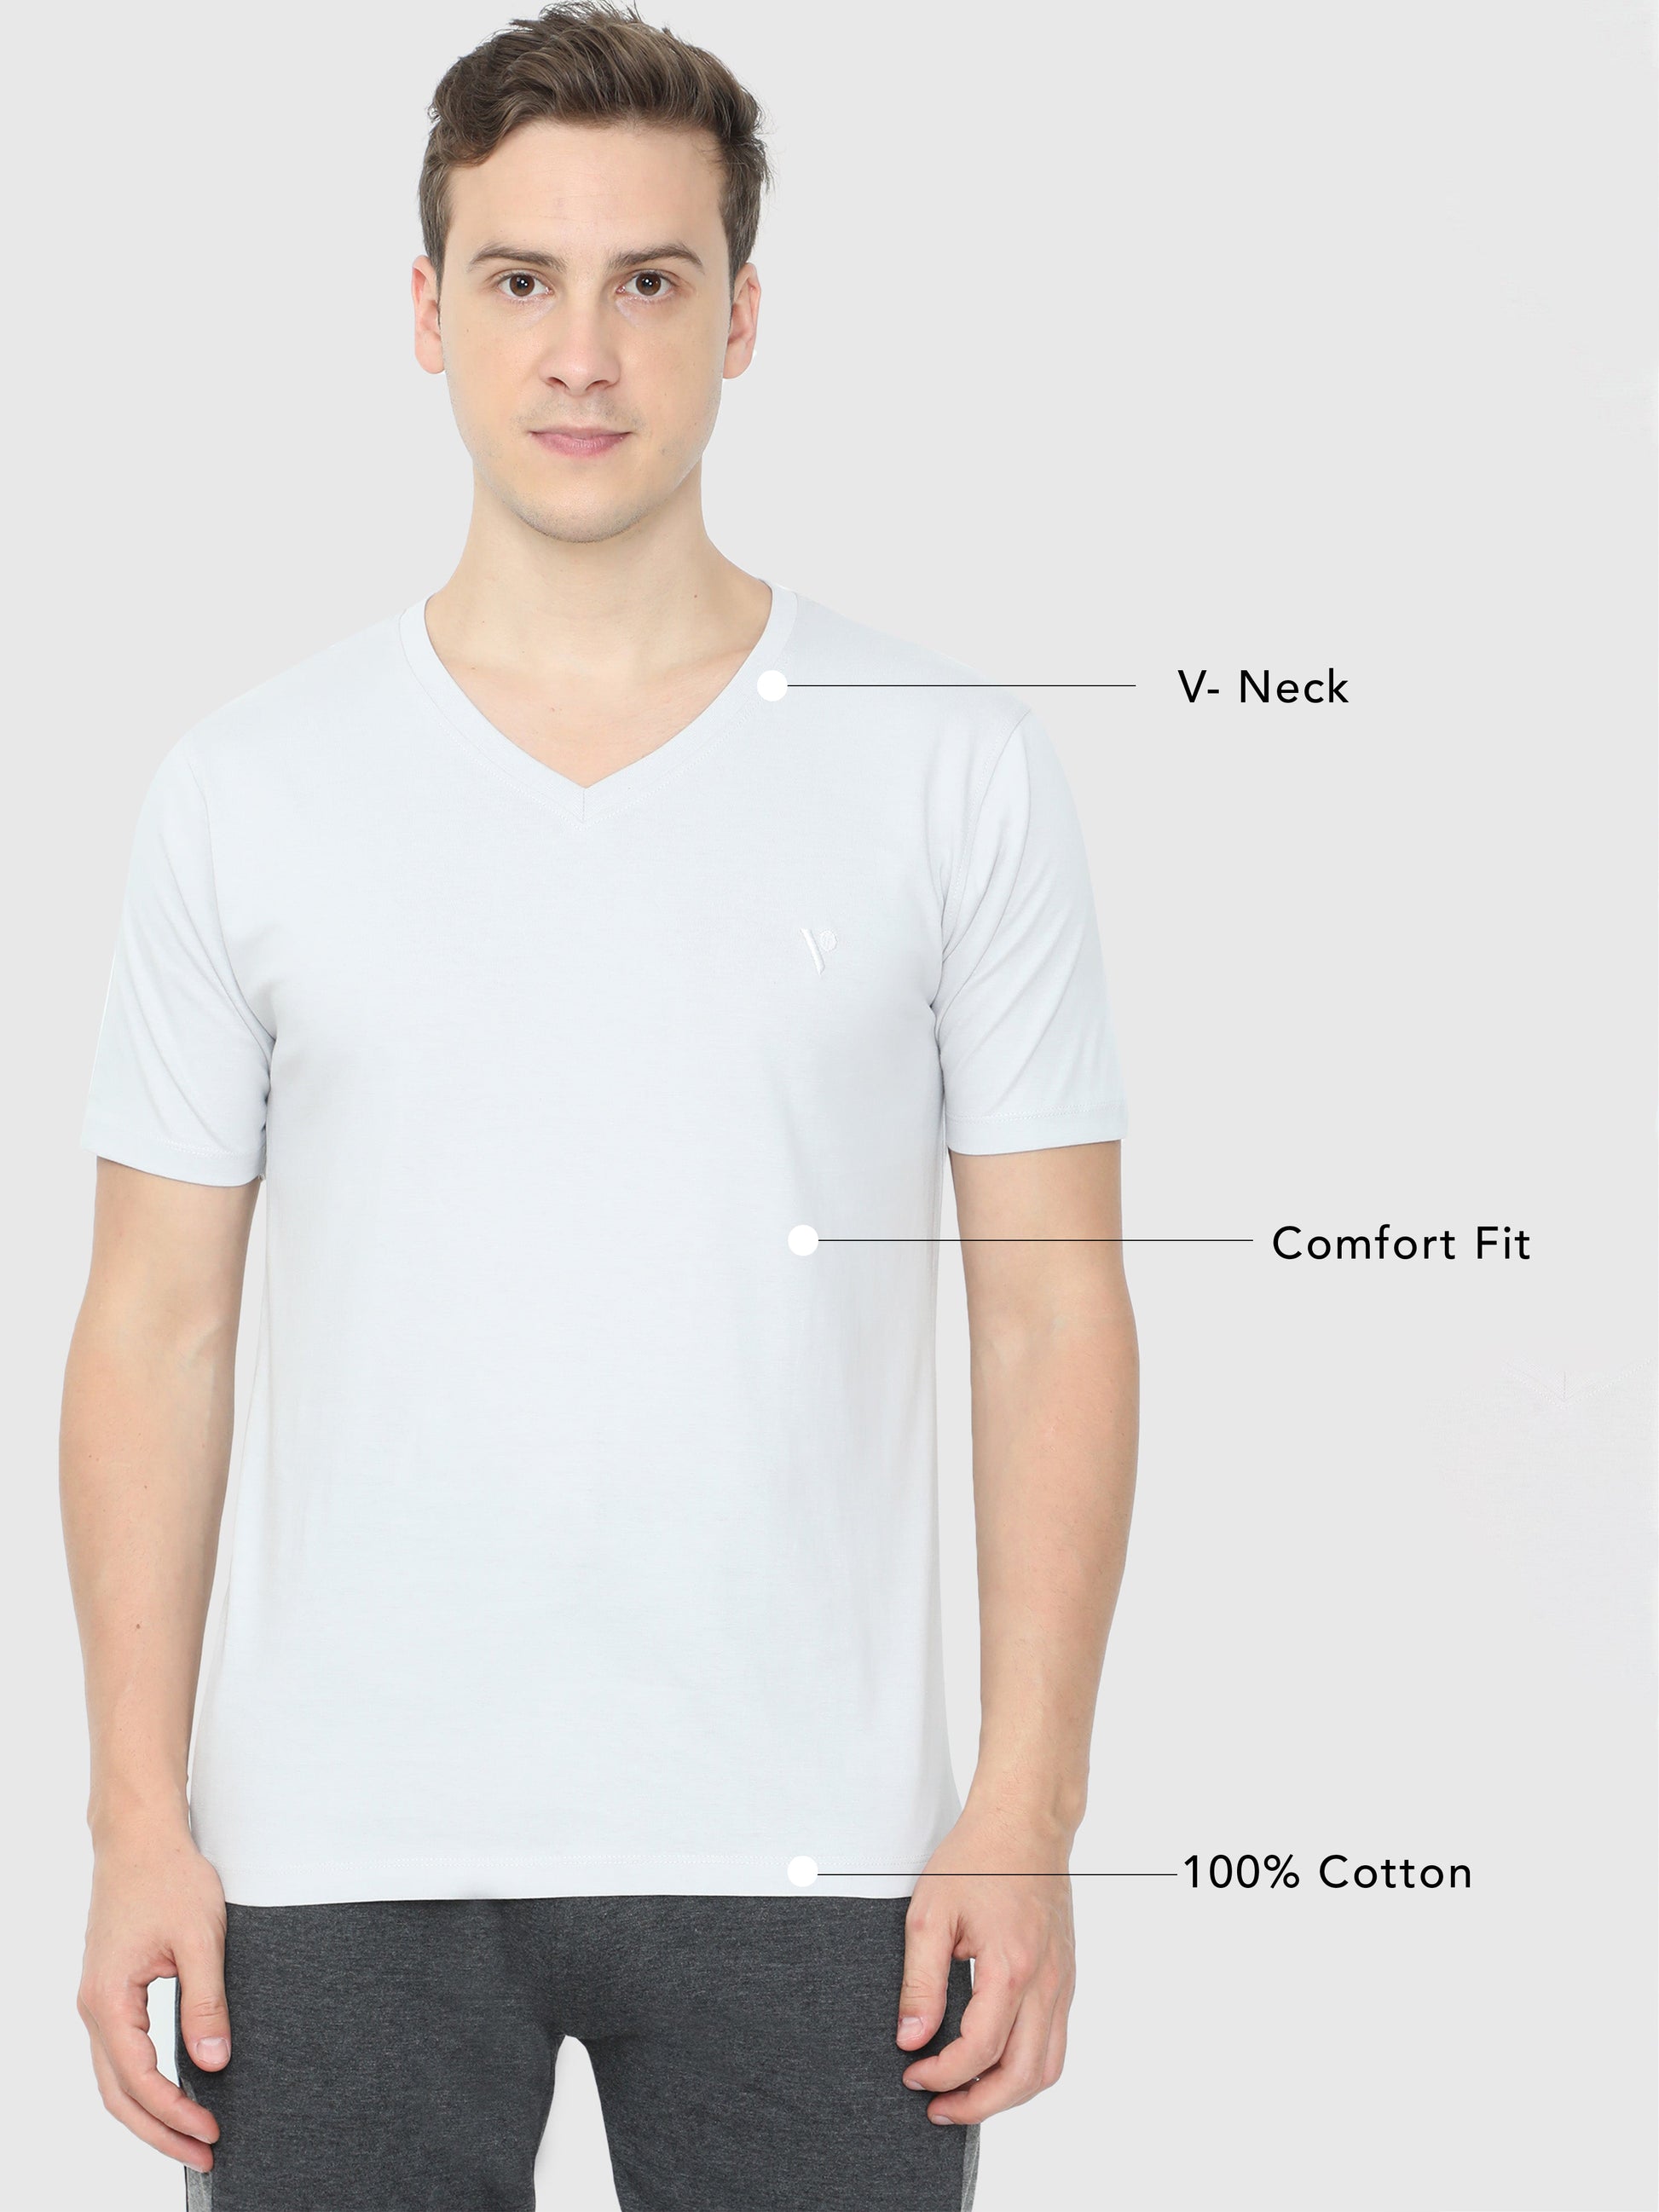 Mens Half Sleeve V Neck Plain T Shirt